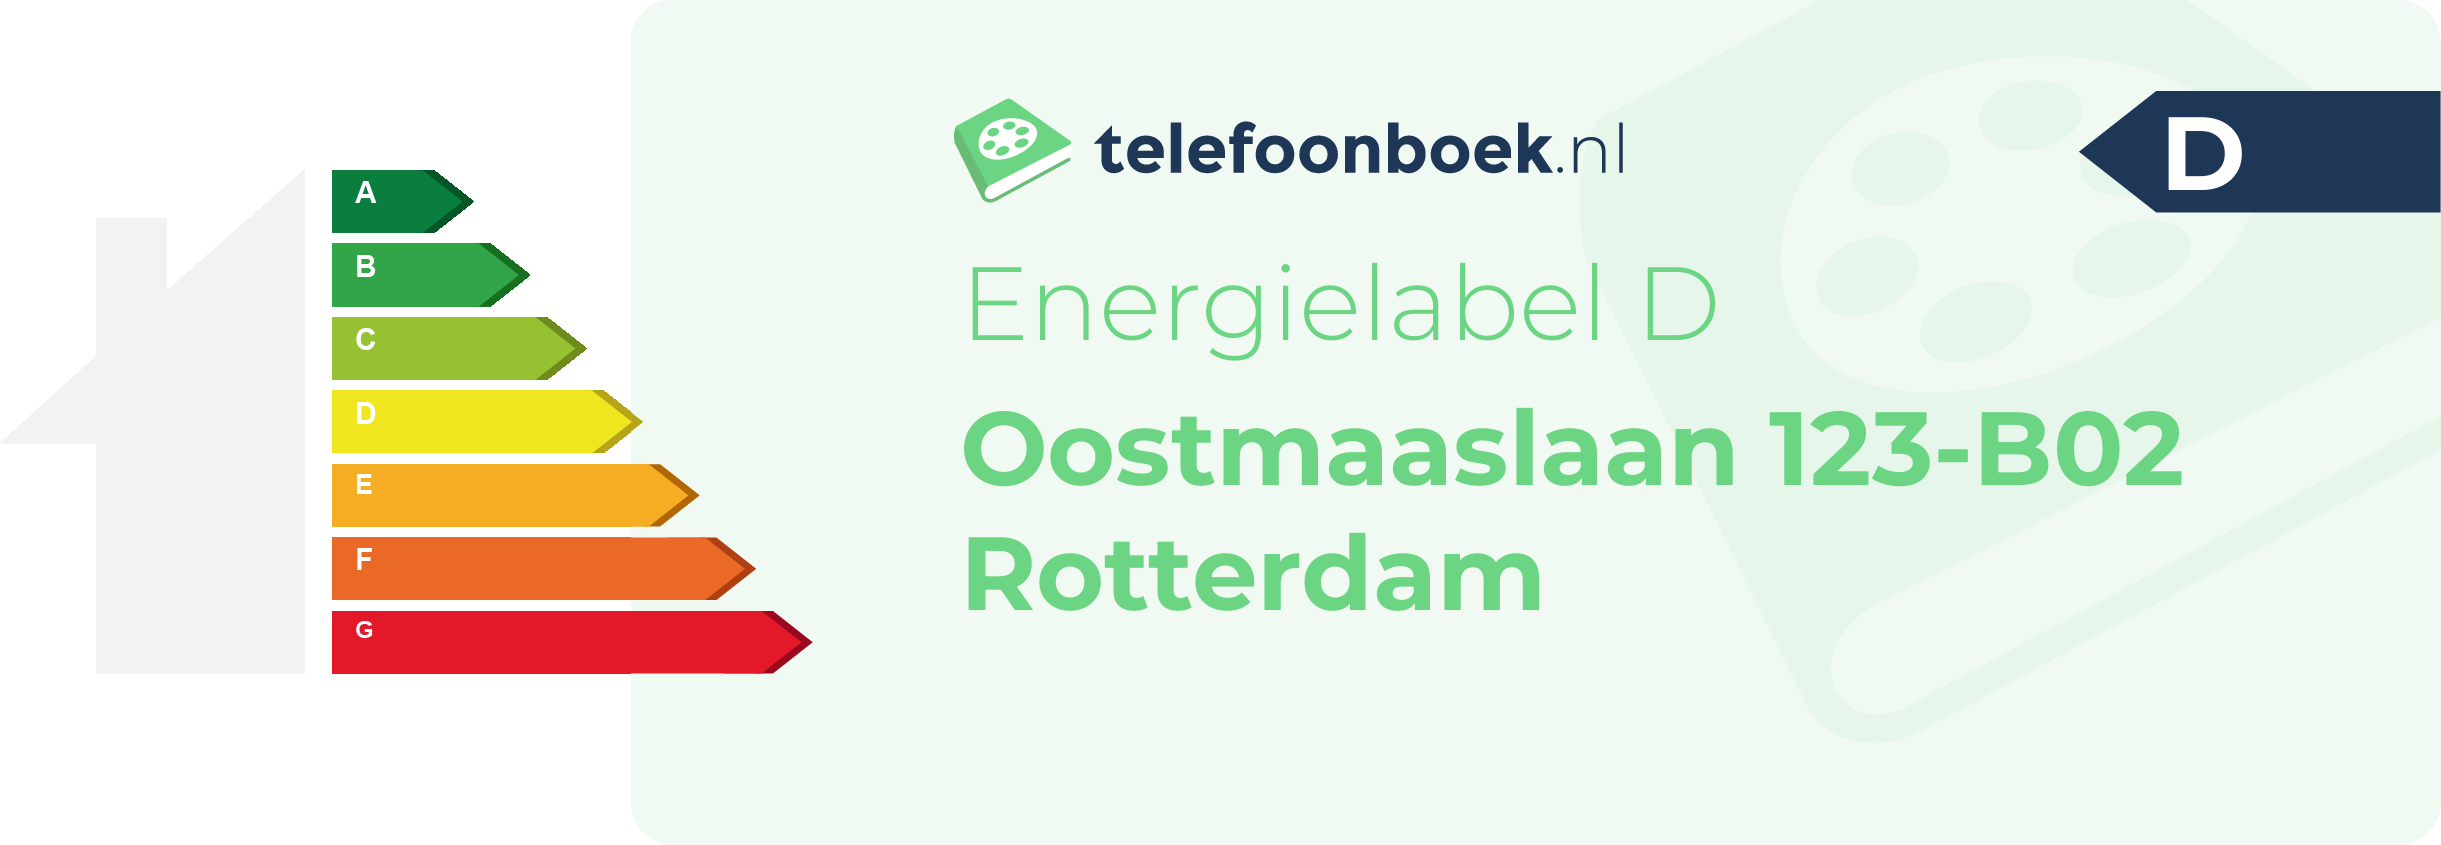 Energielabel Oostmaaslaan 123-B02 Rotterdam